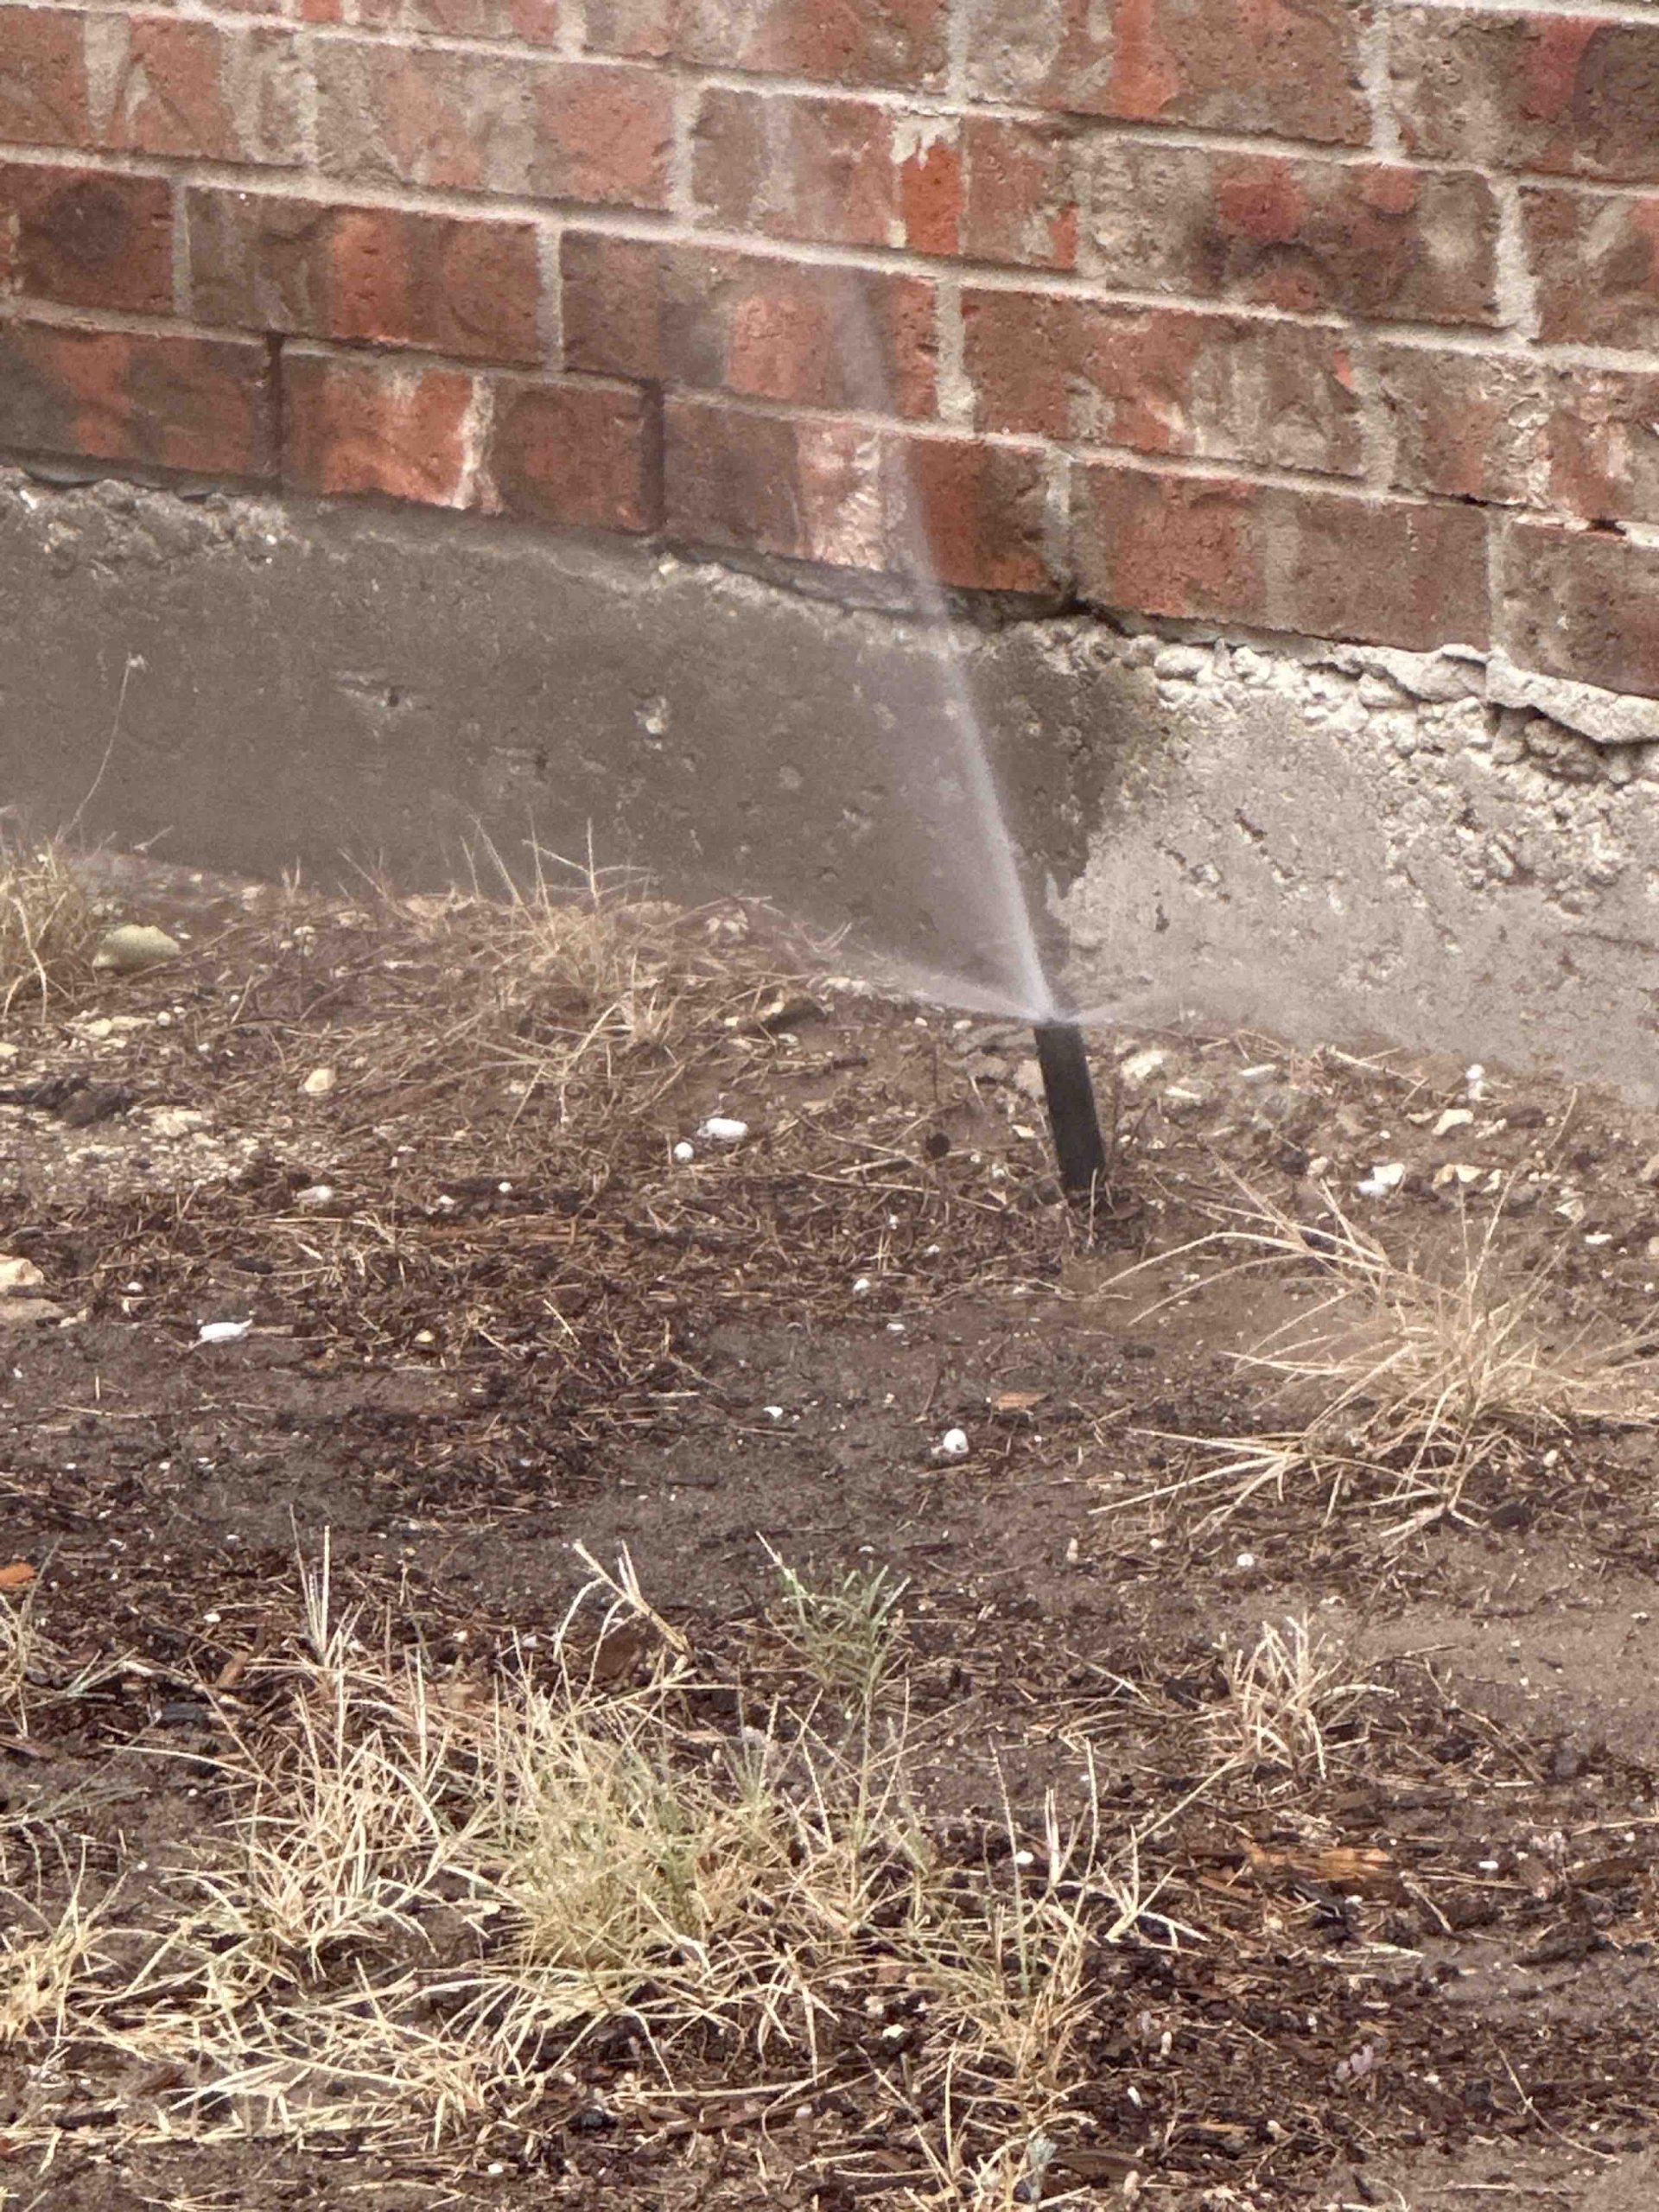 Montgomery sprinkler repair